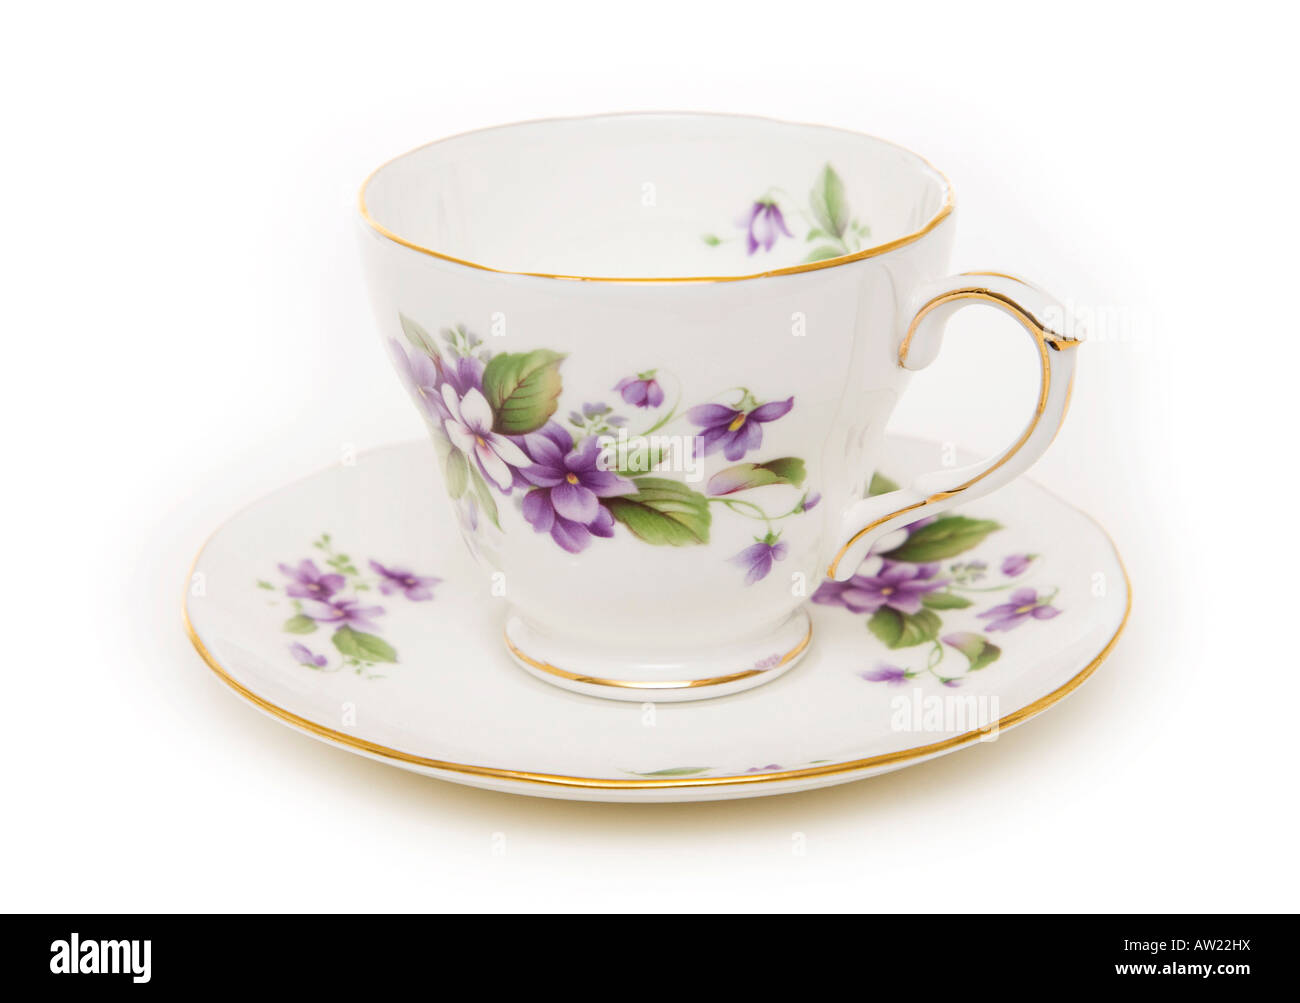 bone china teacup and saucer Stock Photo